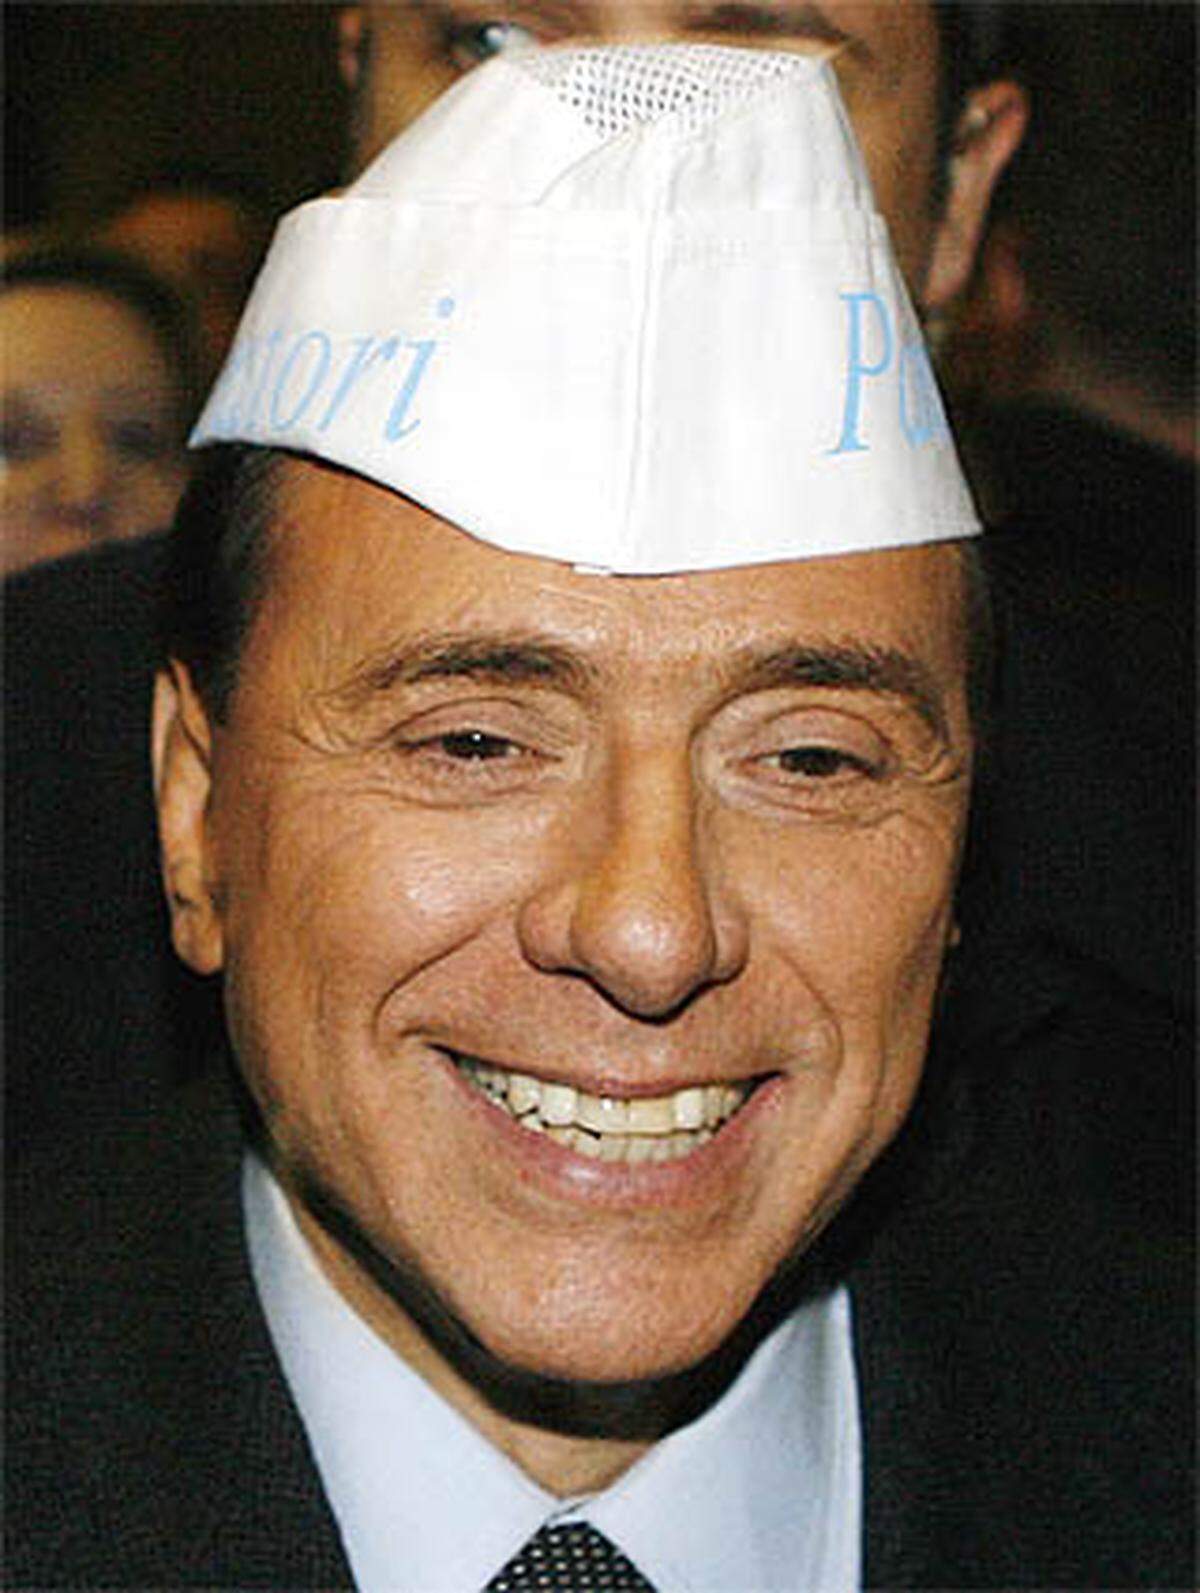 2008 antwortete Berlusconi einer Studentin auf deren Frage, wie junge Paare ohne sichere Arbeitsplätze in Italien eine Familie gründen könnten: "Als Vater rate ich ihnen, einen Sohn Berlusconis oder einen ähnlichen Mann zu heiraten, der nicht solche Probleme hat. Mit ihrem Lächeln können Sie sich das ja leisten."